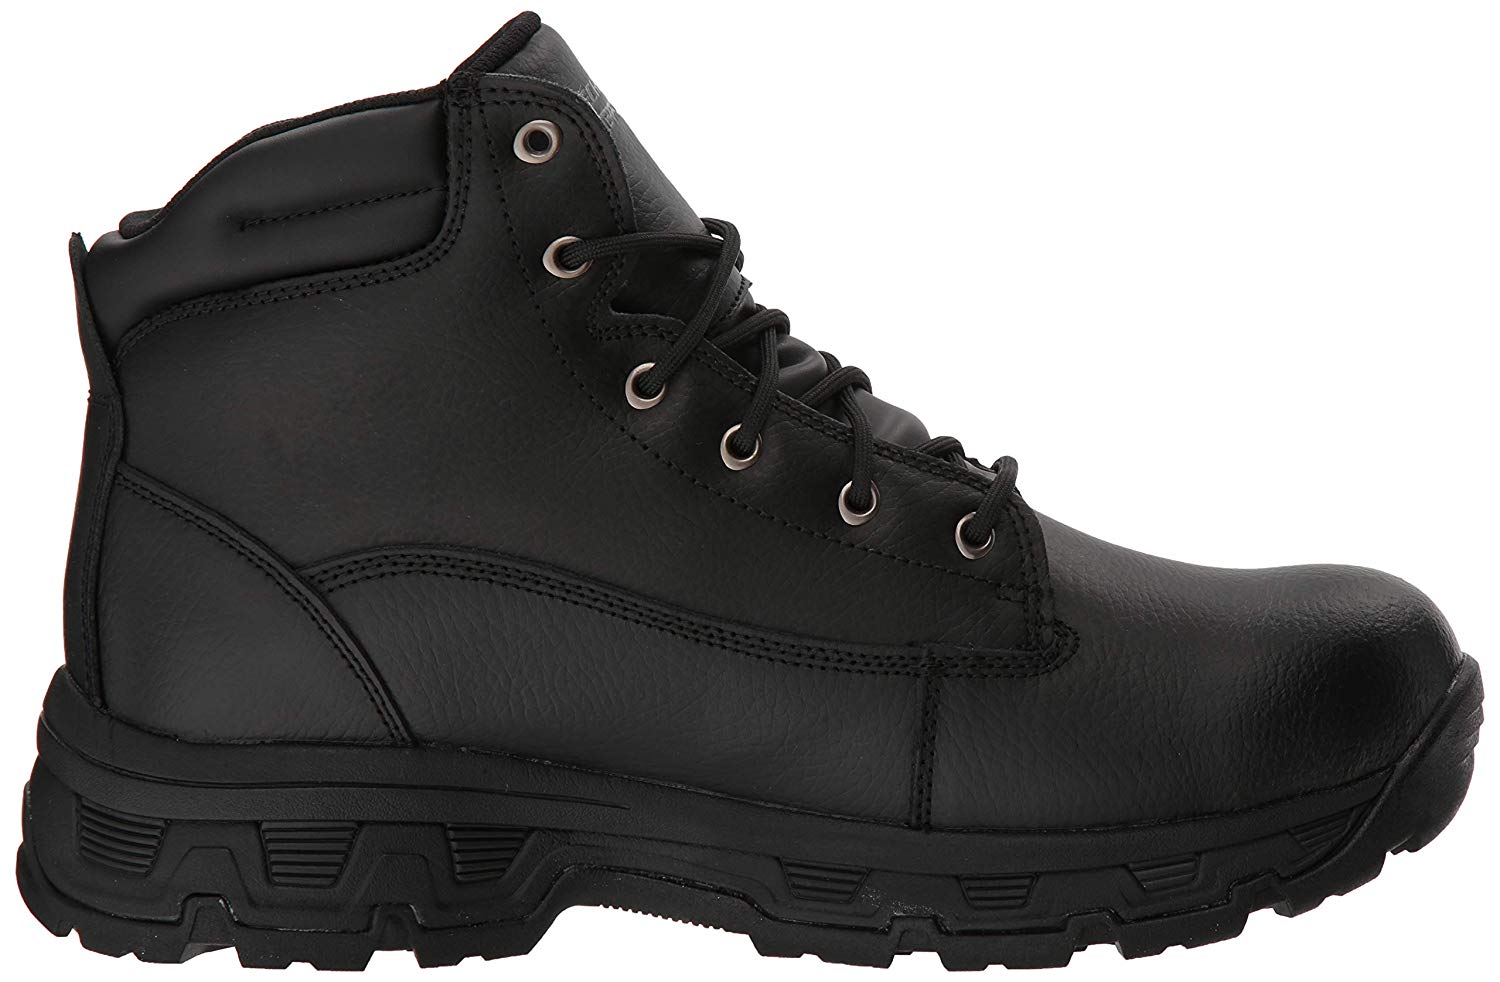 Skechers Men's Morson-Sinatro Hiking Boot, Black, Size 9.5 GXGc | eBay